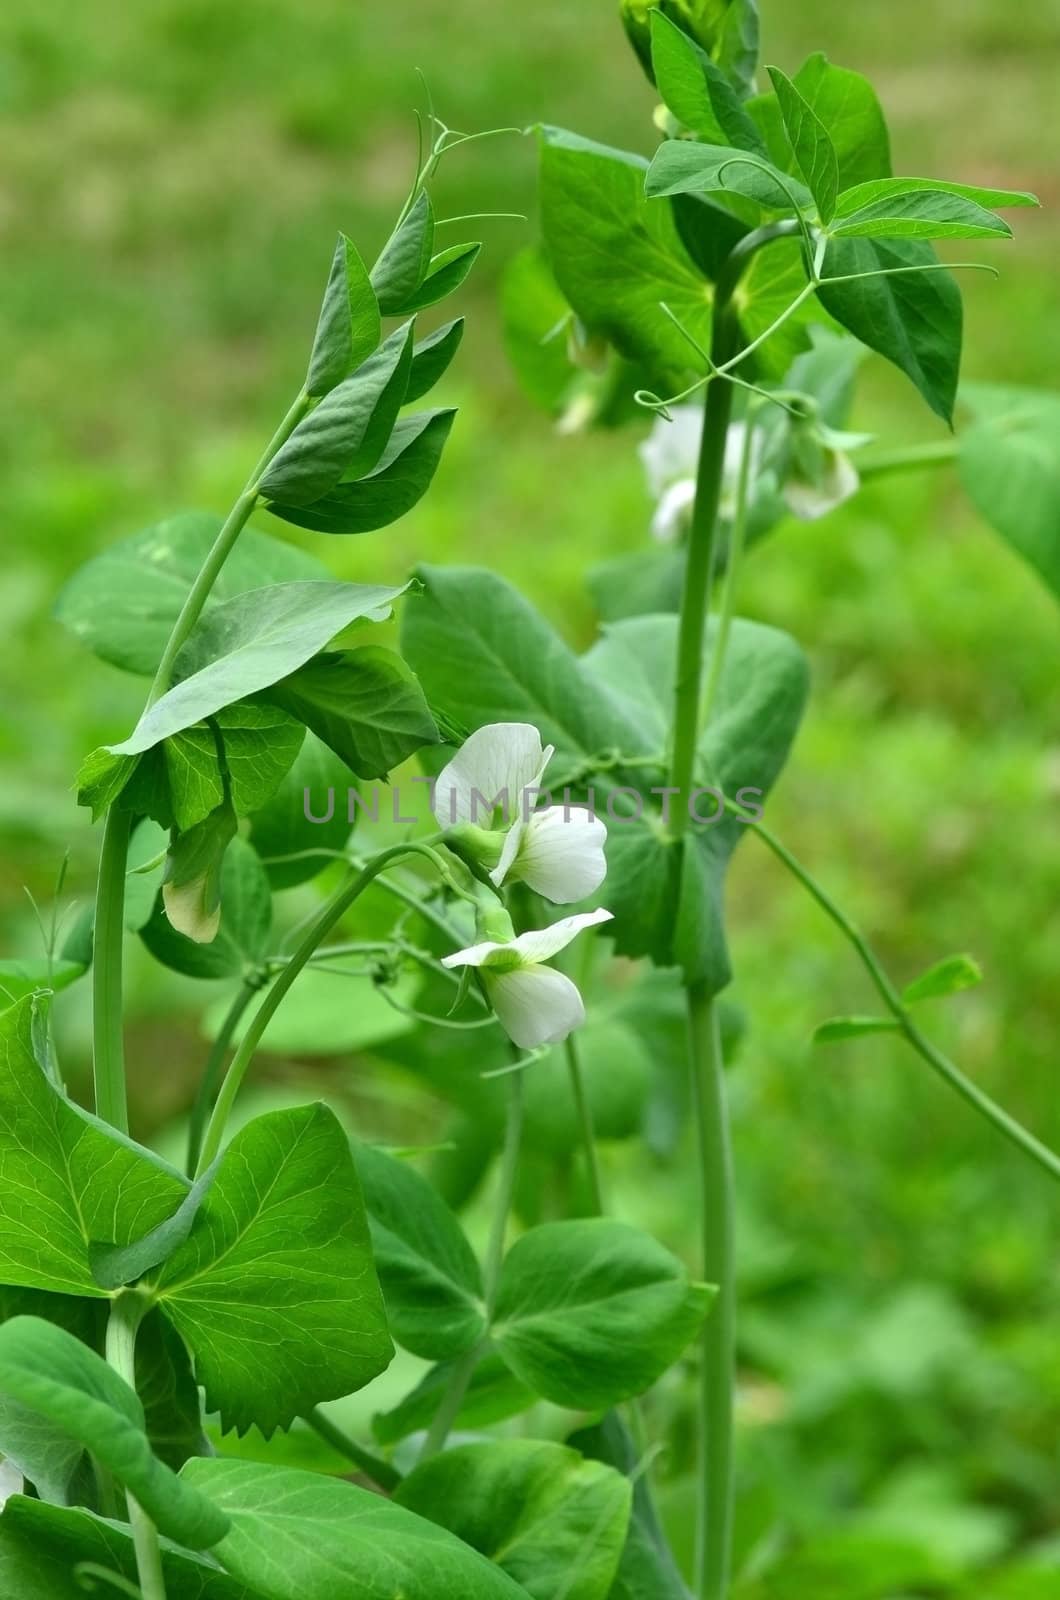 Blooming peas by Vectorex